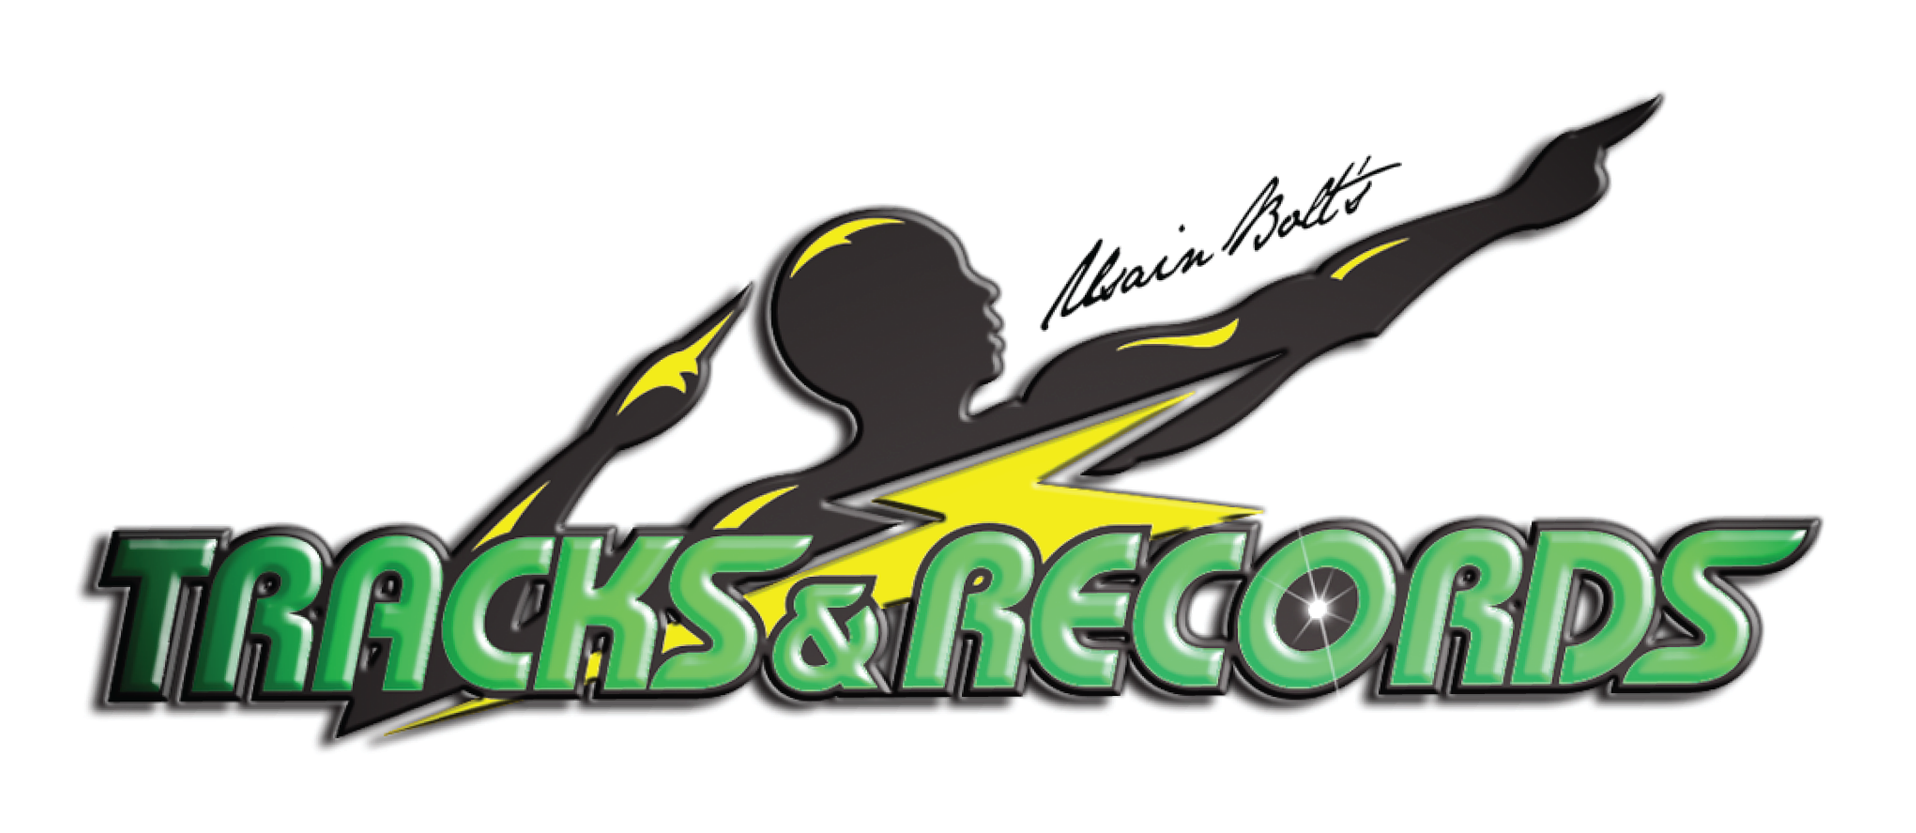 Usain Bolt Tracksand Records Logo PNG